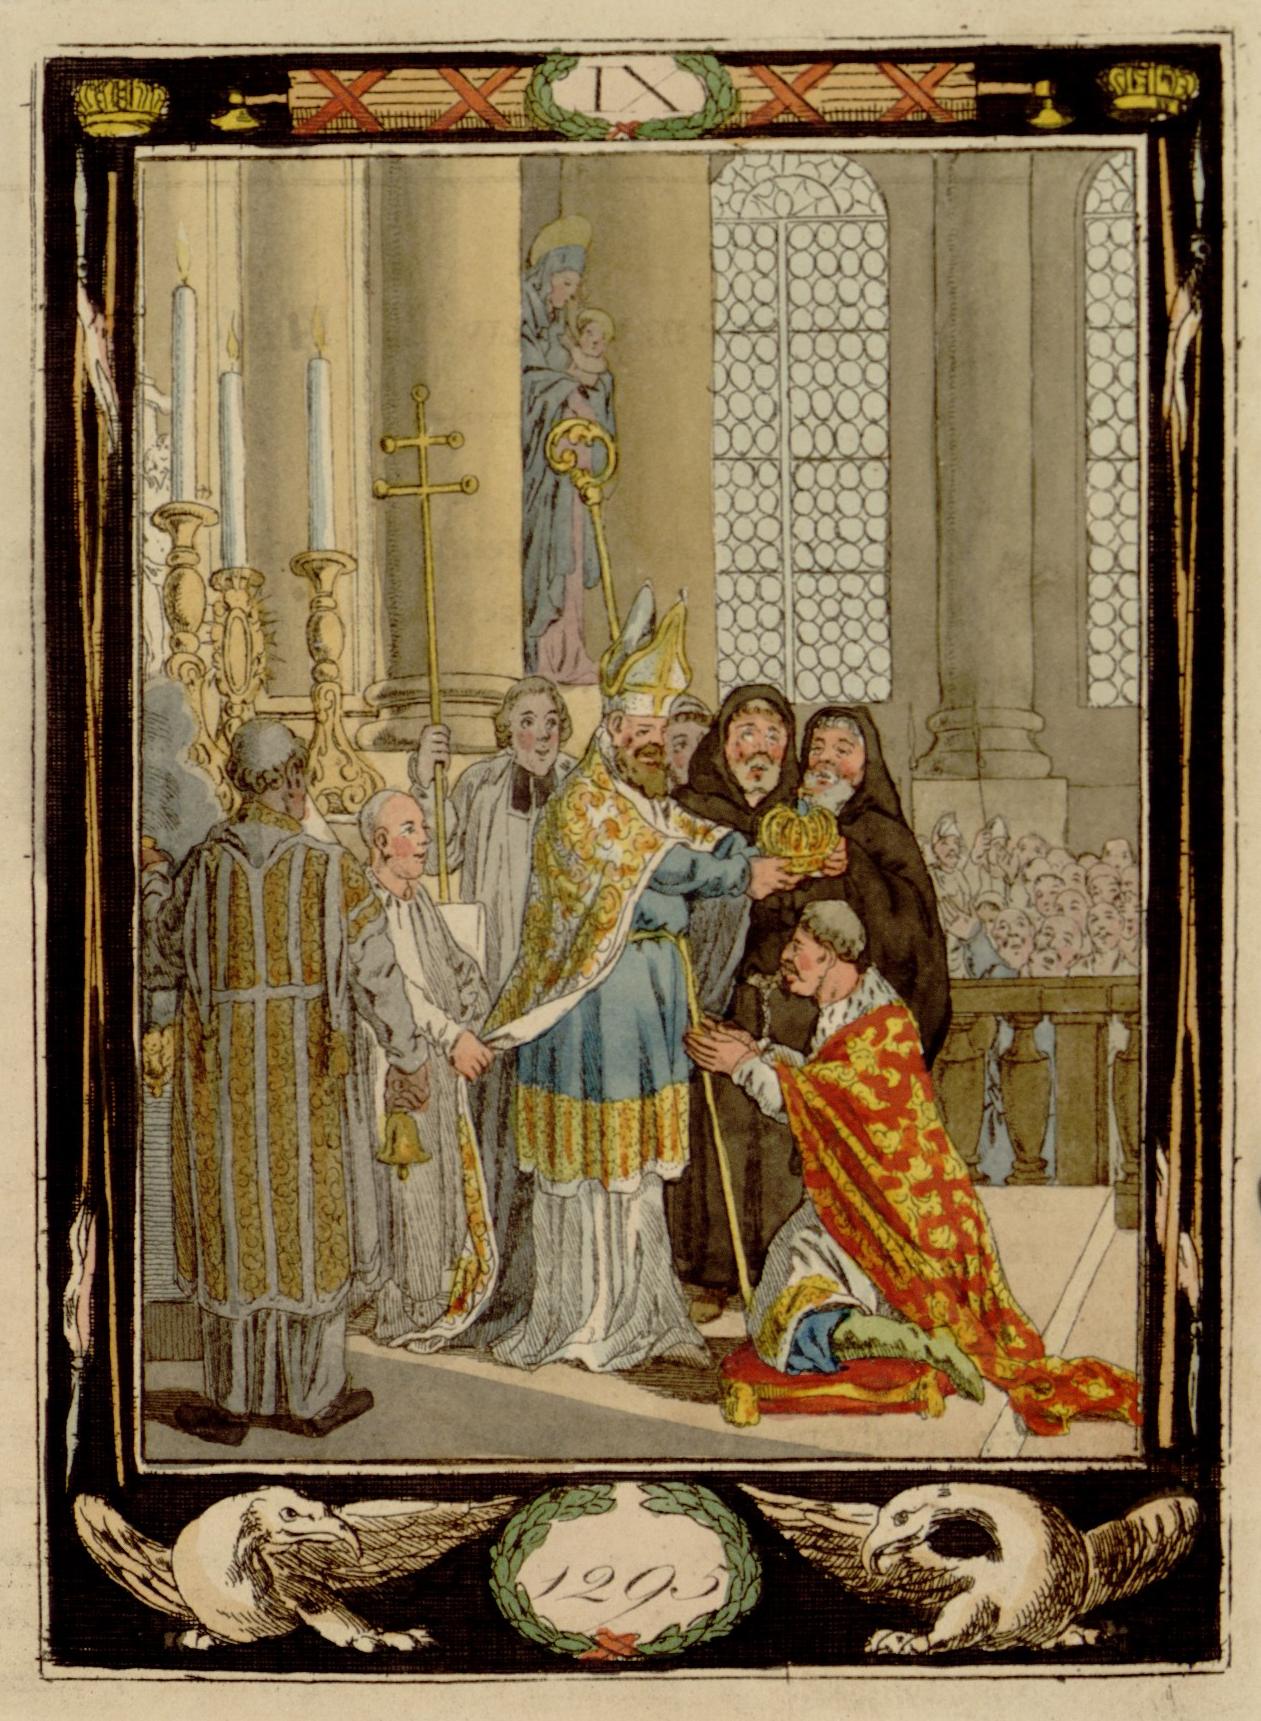 Wnętrze katedry. Starszy mężczyzna w płaszczu klęka na poduszce przed mężczyzną - biskupem, trzymającym nad głową klękającego koronę. Scenie przypatrują się mężczyźni